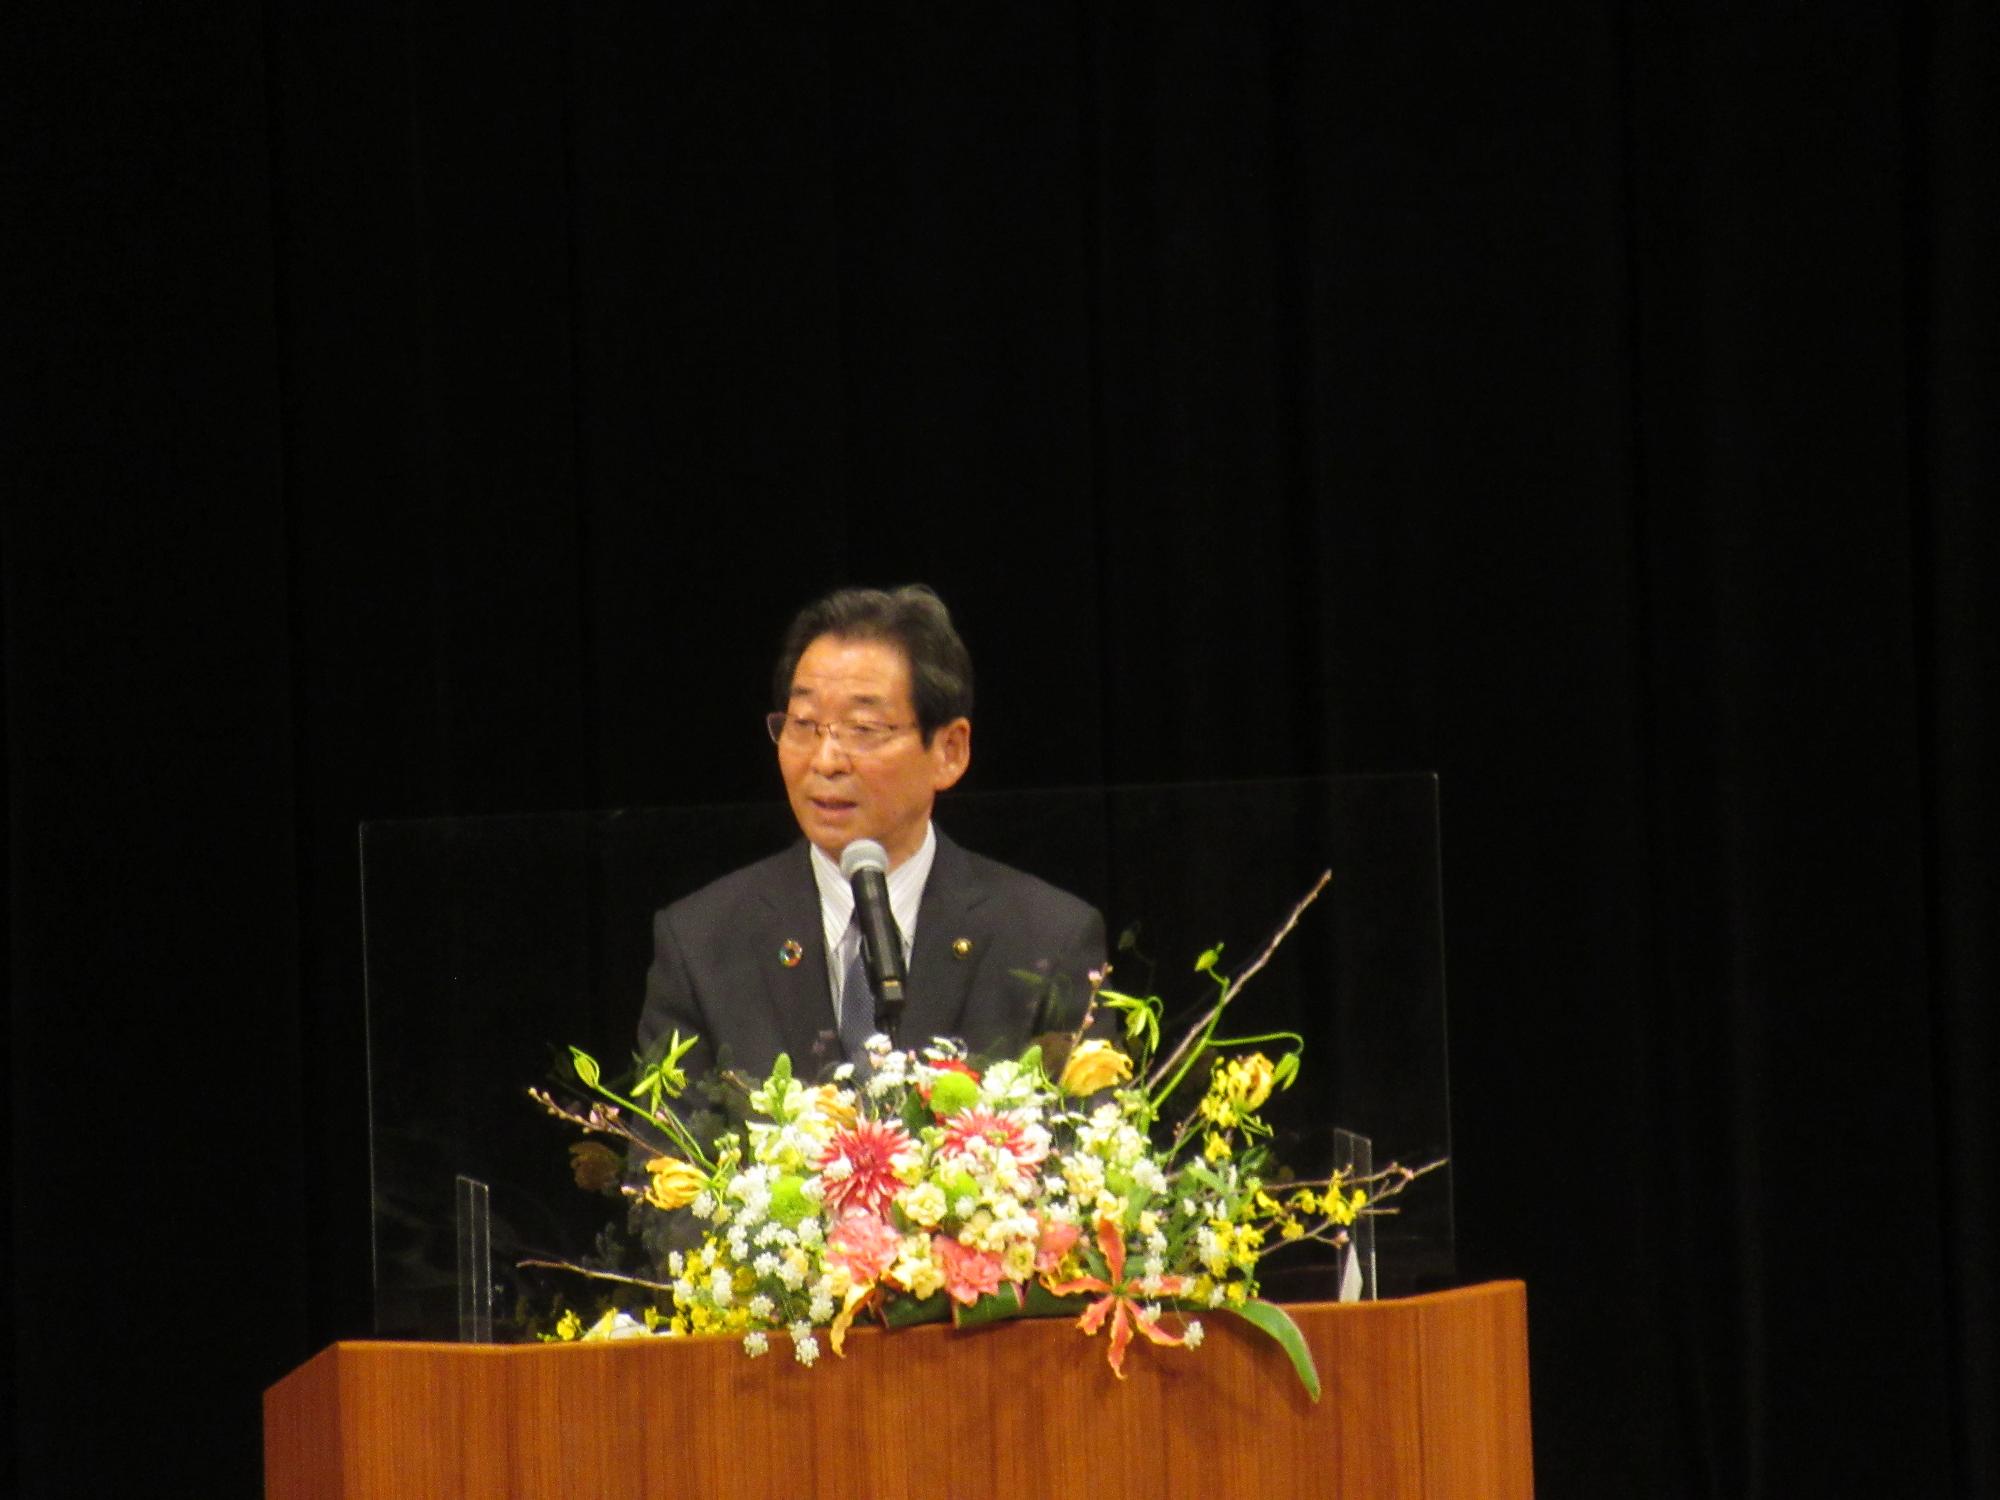 閉講式で祝辞を述べる福元市長の写真